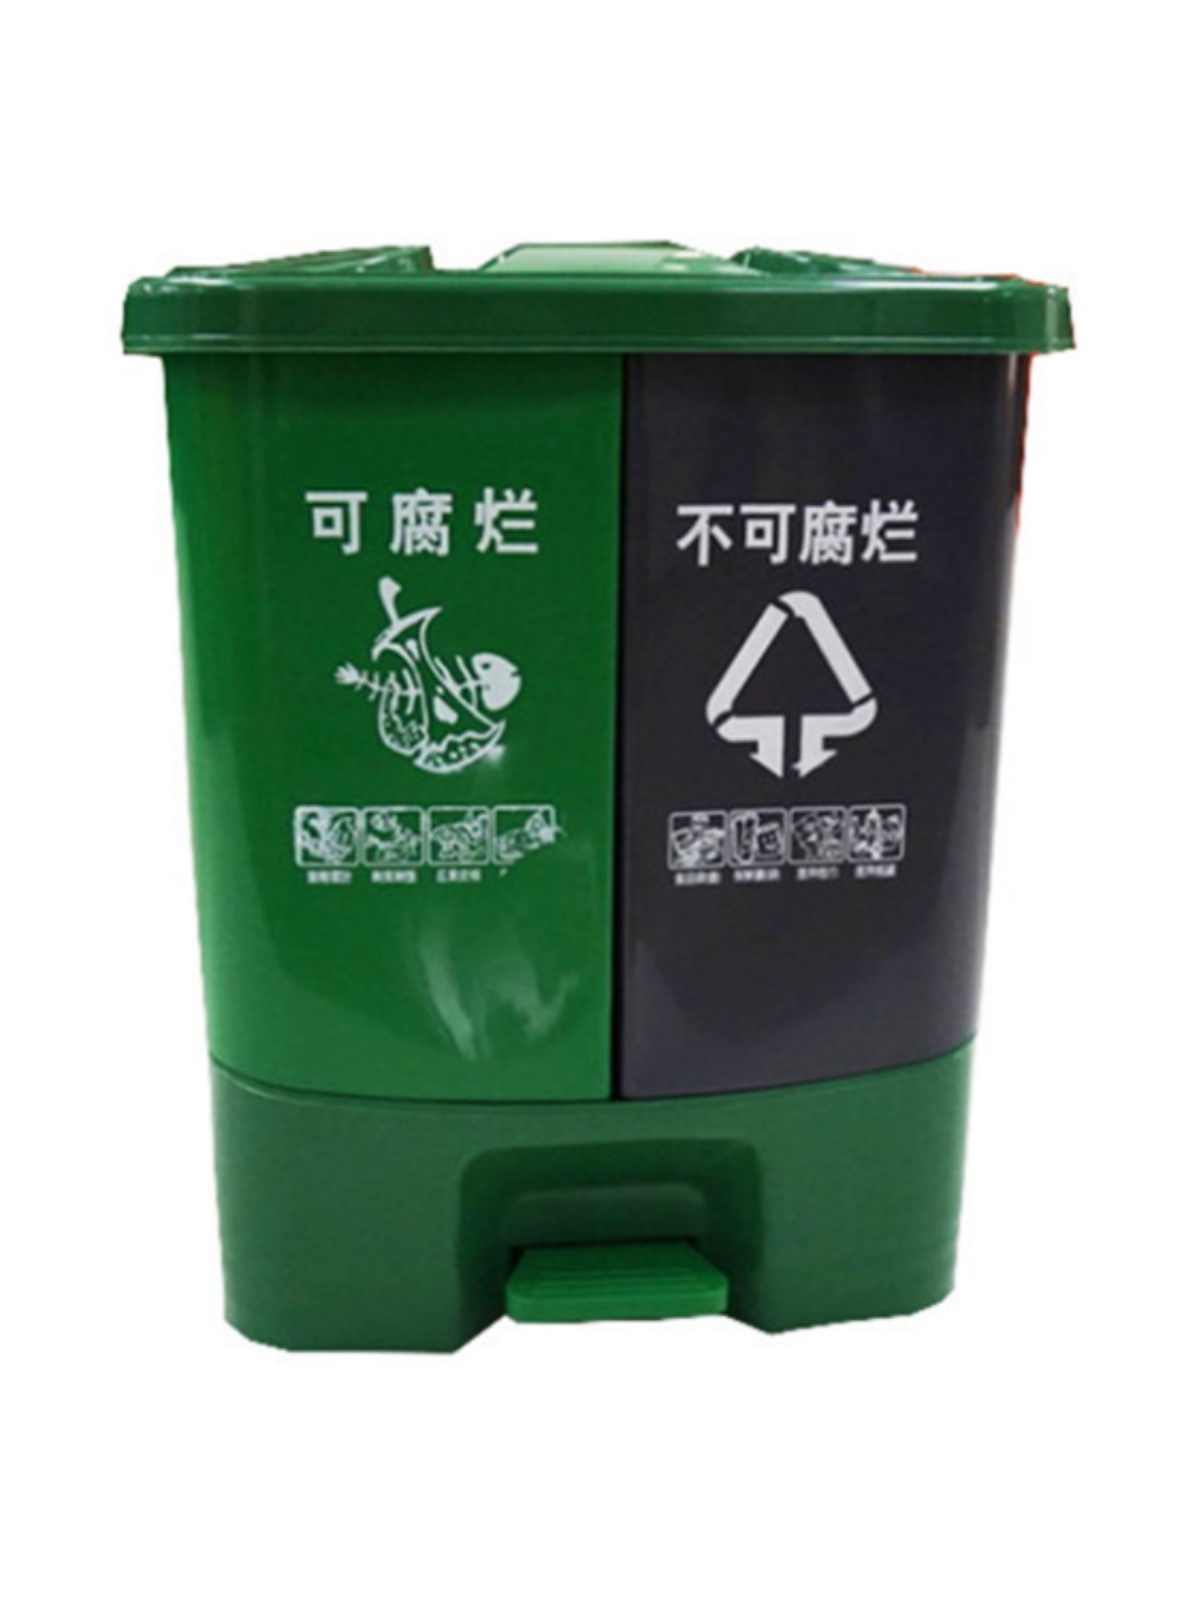 分类垃圾桶双桶家用脚踏酒店厨房办公双胞胎带盖塑料双分类垃圾桶